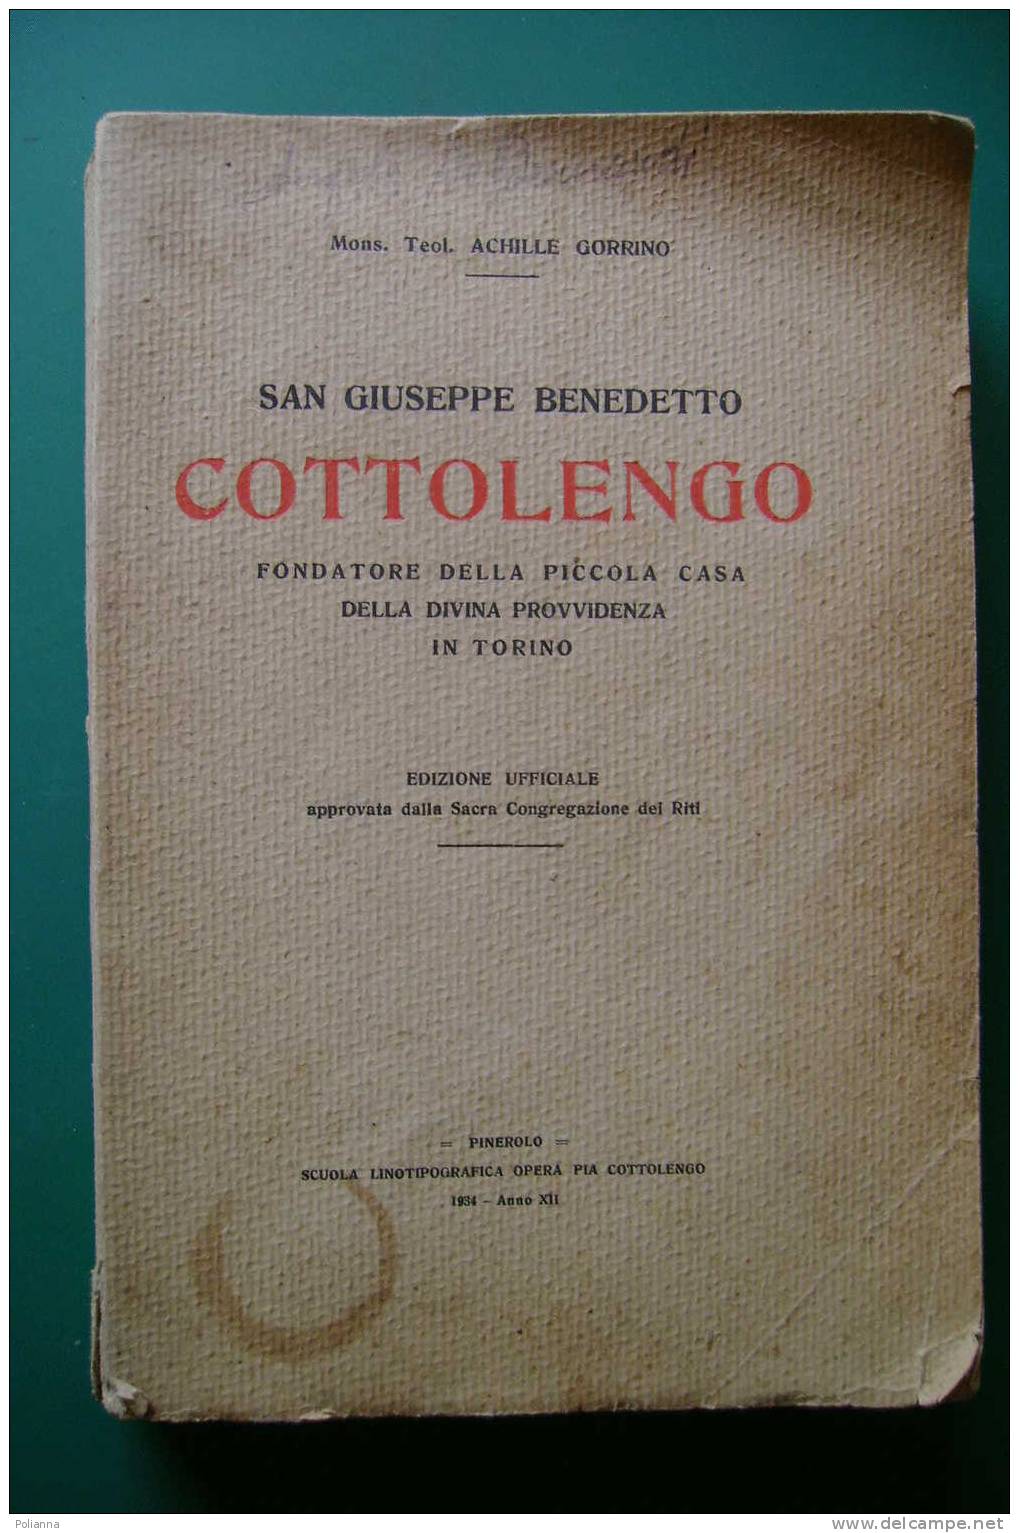 PDU/40 Gorrino SAN GIUSEPPE BENEDETTO COTTOLENGO Sacra Congr.dei Riti-Pinerolo 1934/Bra/Corneliano Alba - Religion